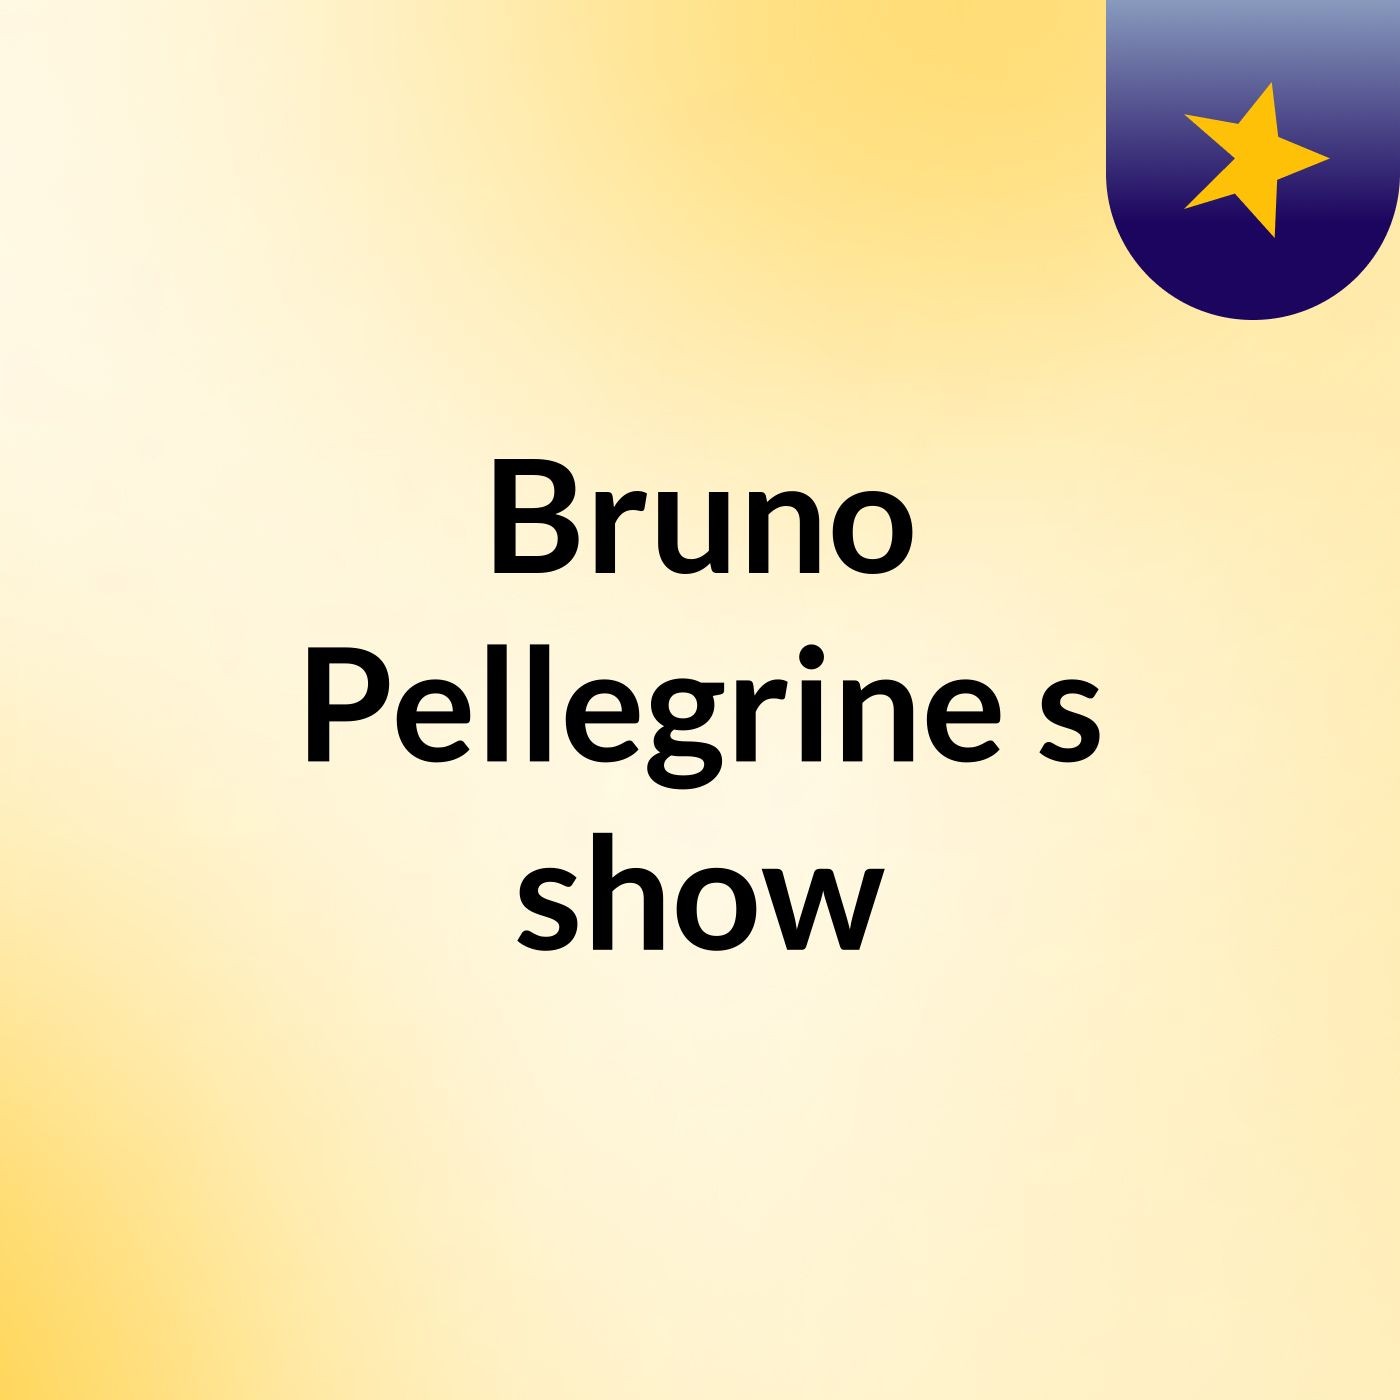 Episódio 5 - Bruno Pellegrine's show